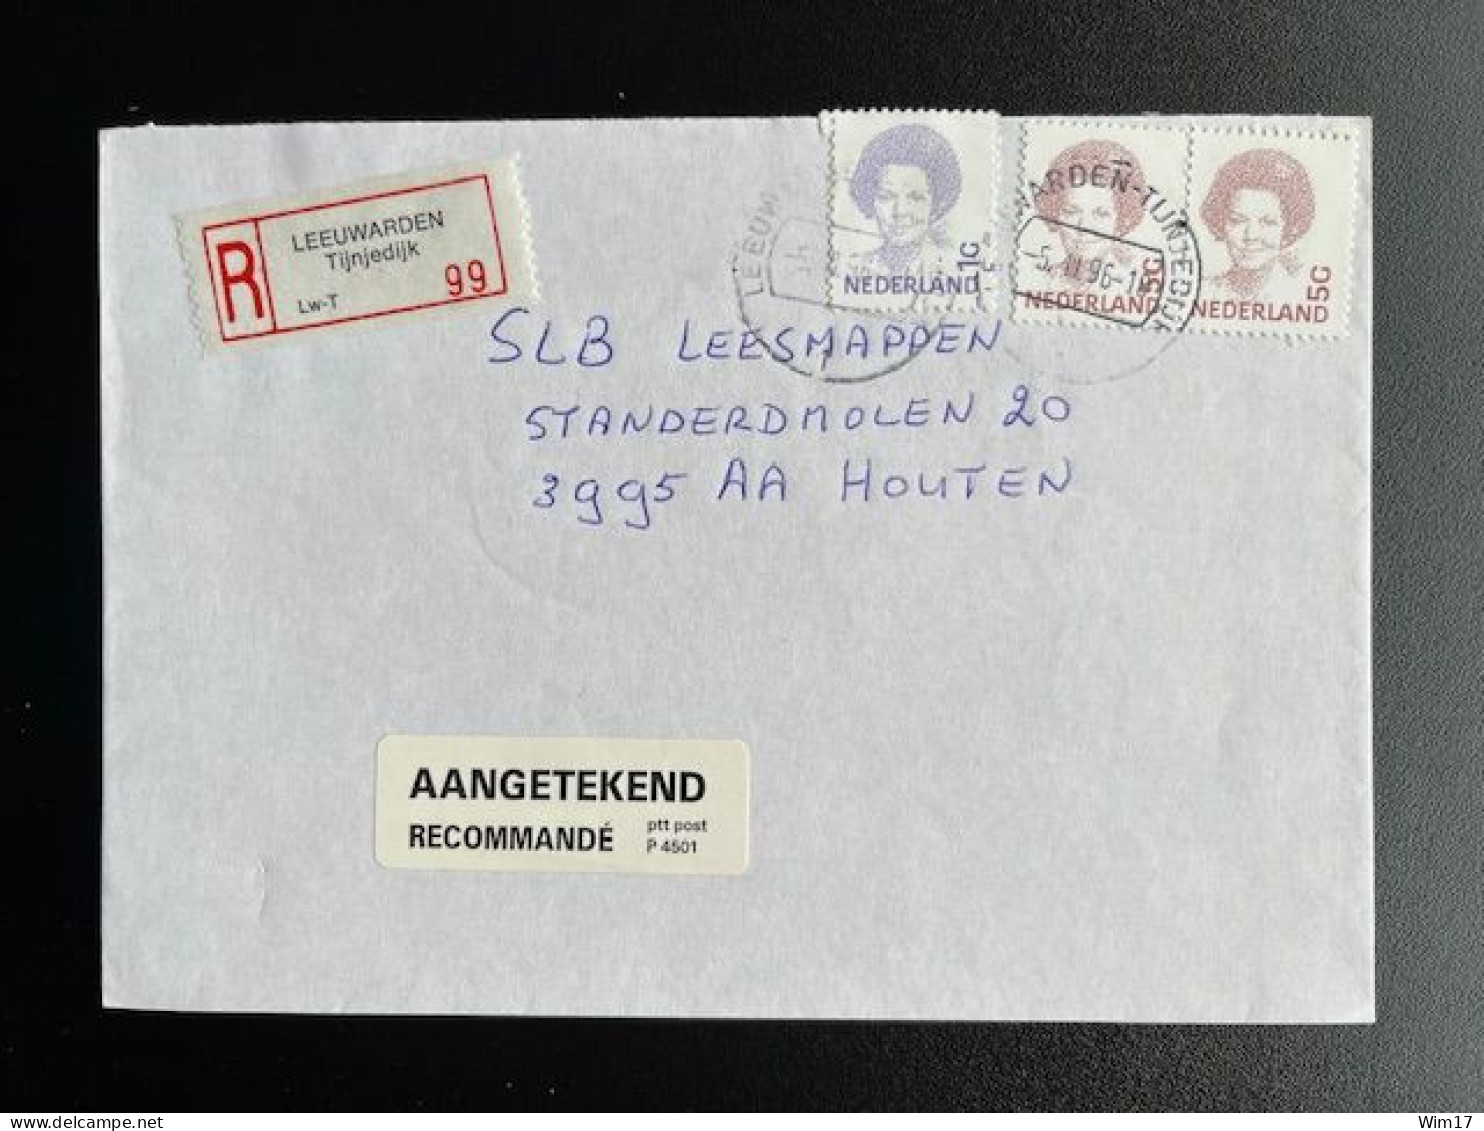 NETHERLANDS 1996 REGISTERED LETTER LEEUWARDEN TIJNJEDIJK TO HOUTEN 05-03-1996 NEDERLAND AANGETEKEND - Storia Postale